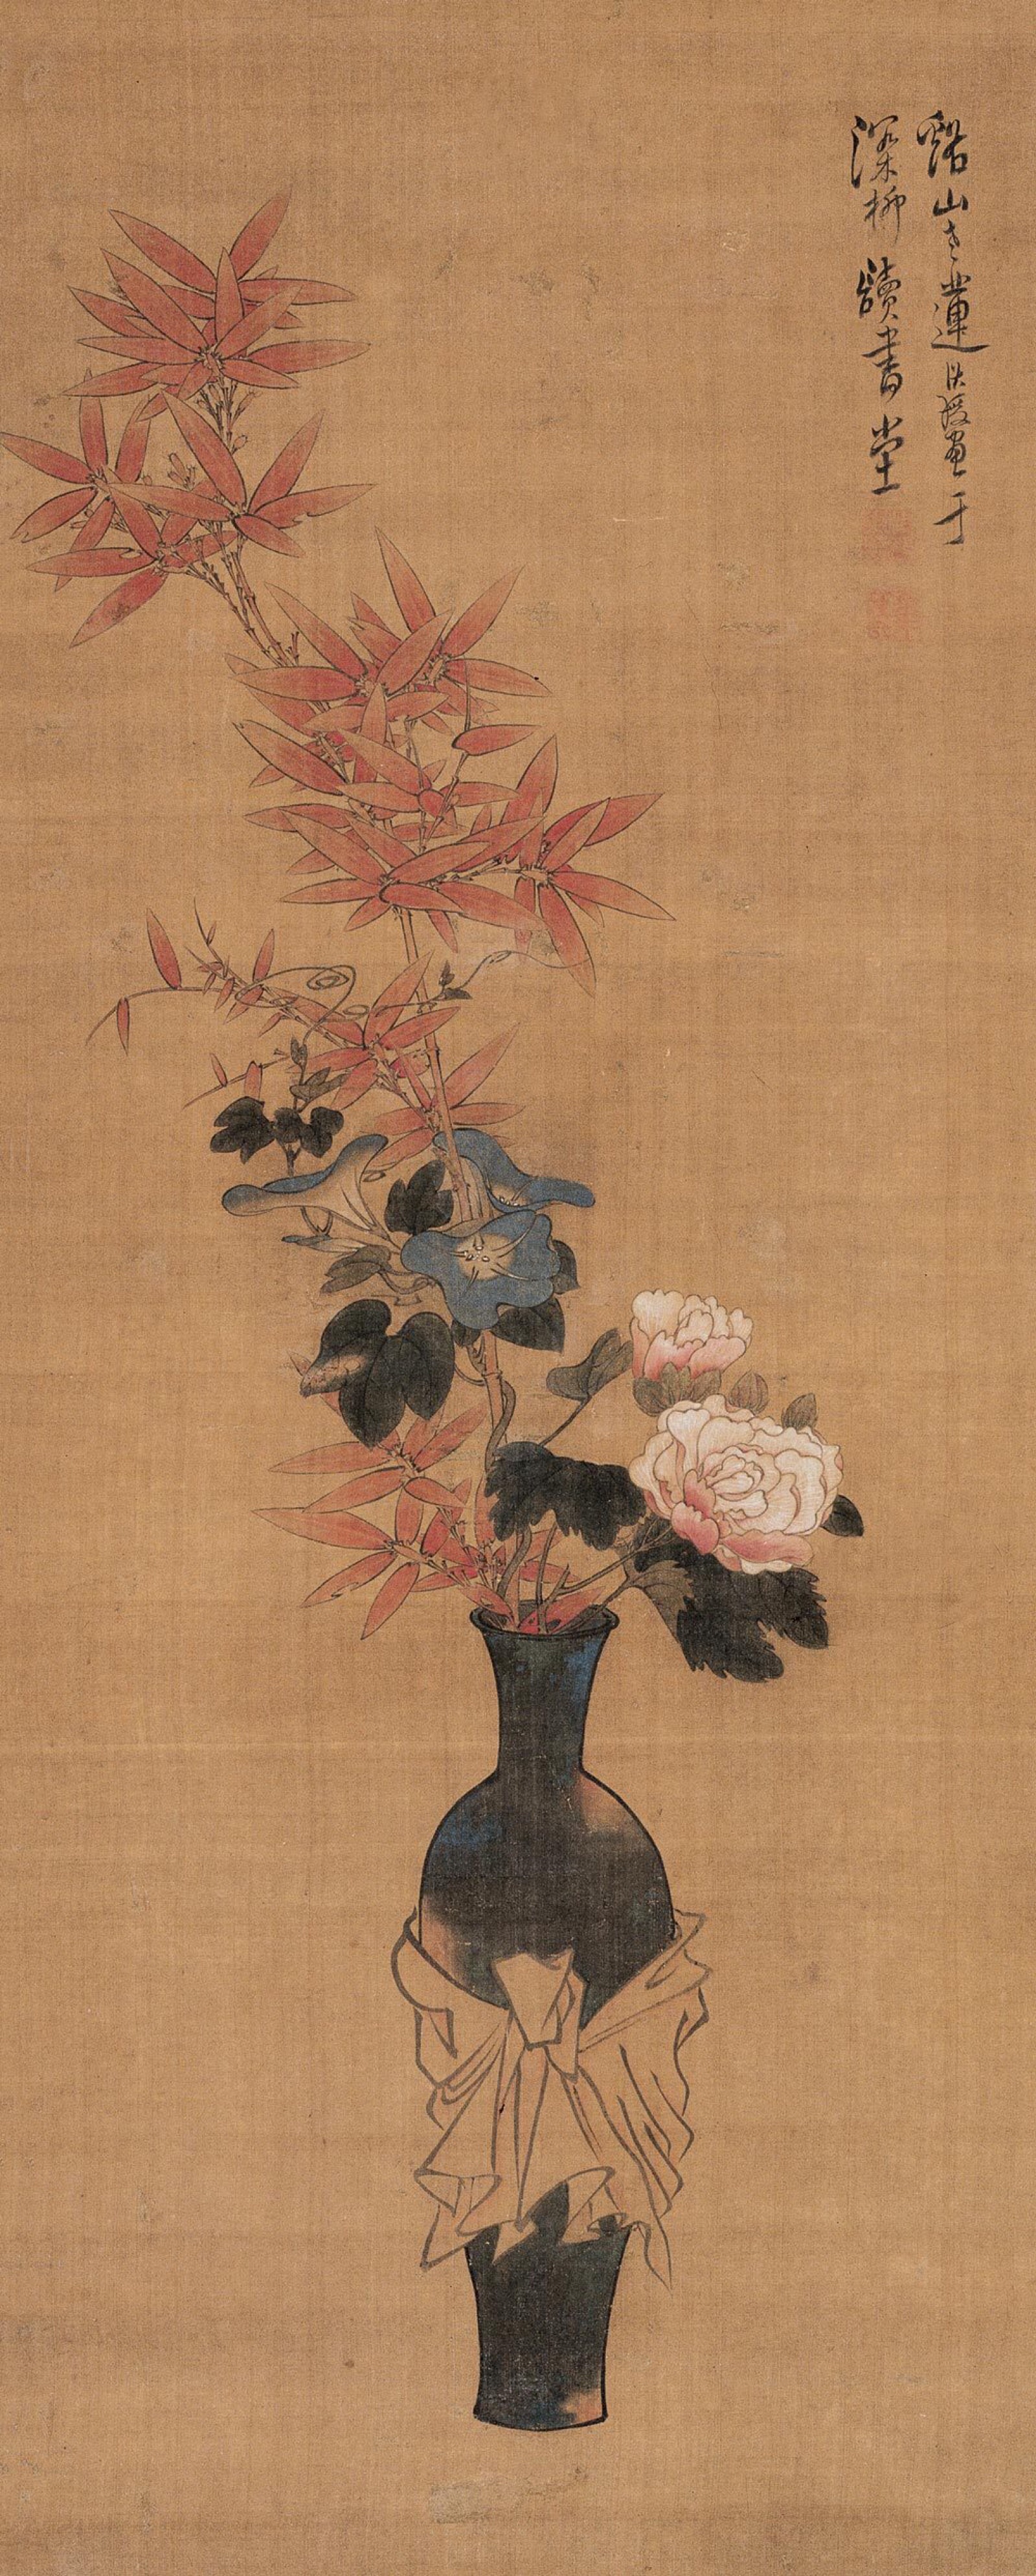 陈洪绶清供图,瓶遮系布帛,中插朱竹,下衬两朵木芙蓉花朵与叶片.